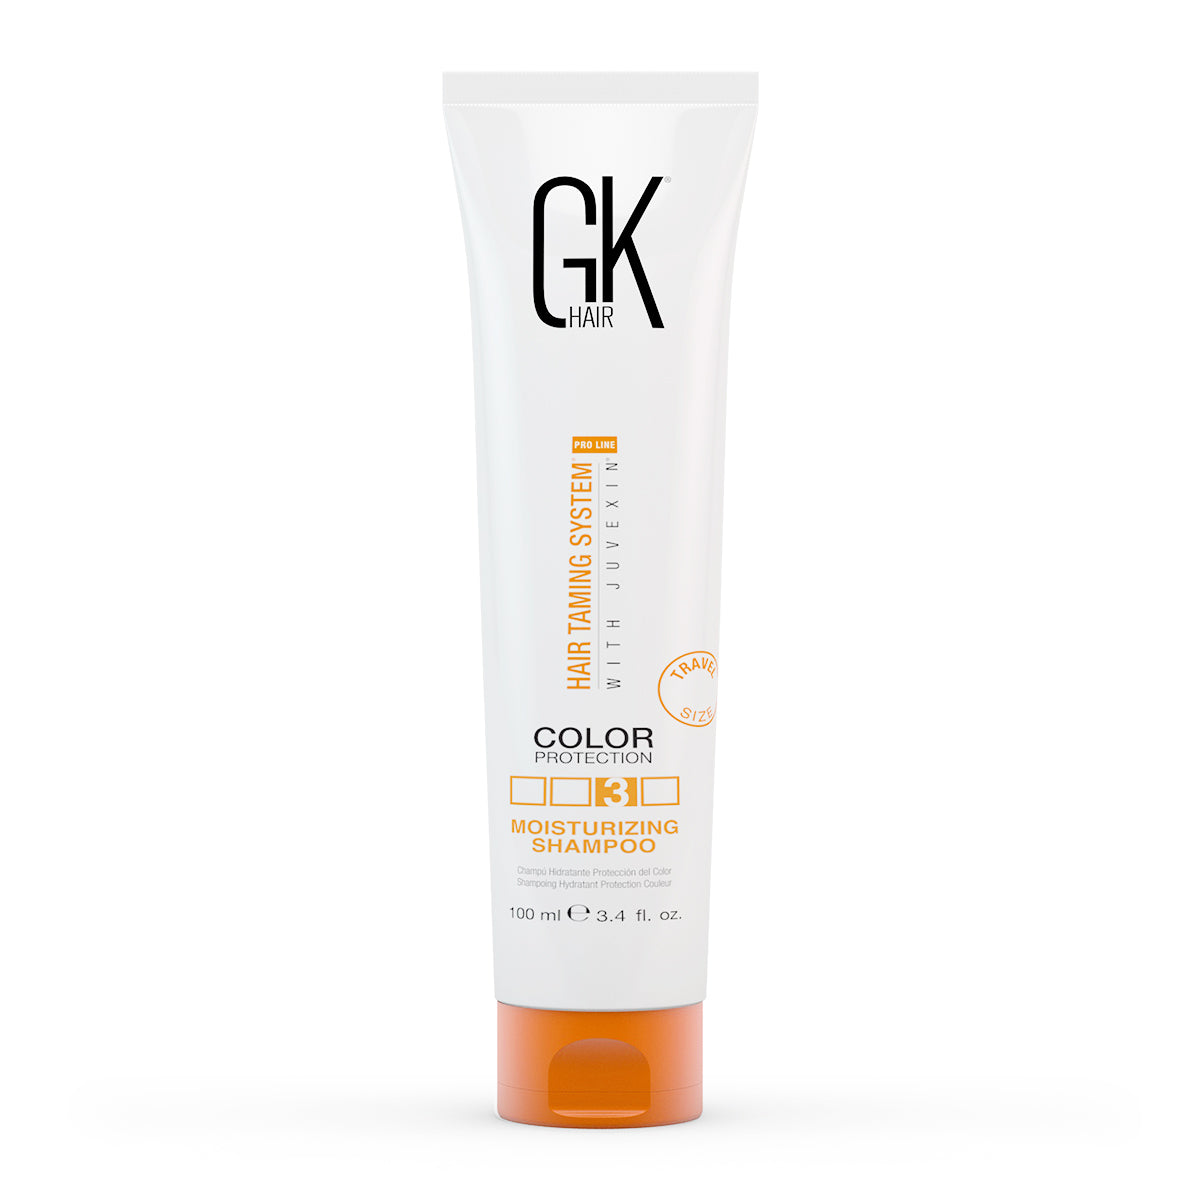 GK Hair Moisturizing Shampoo Color Protection 100ml